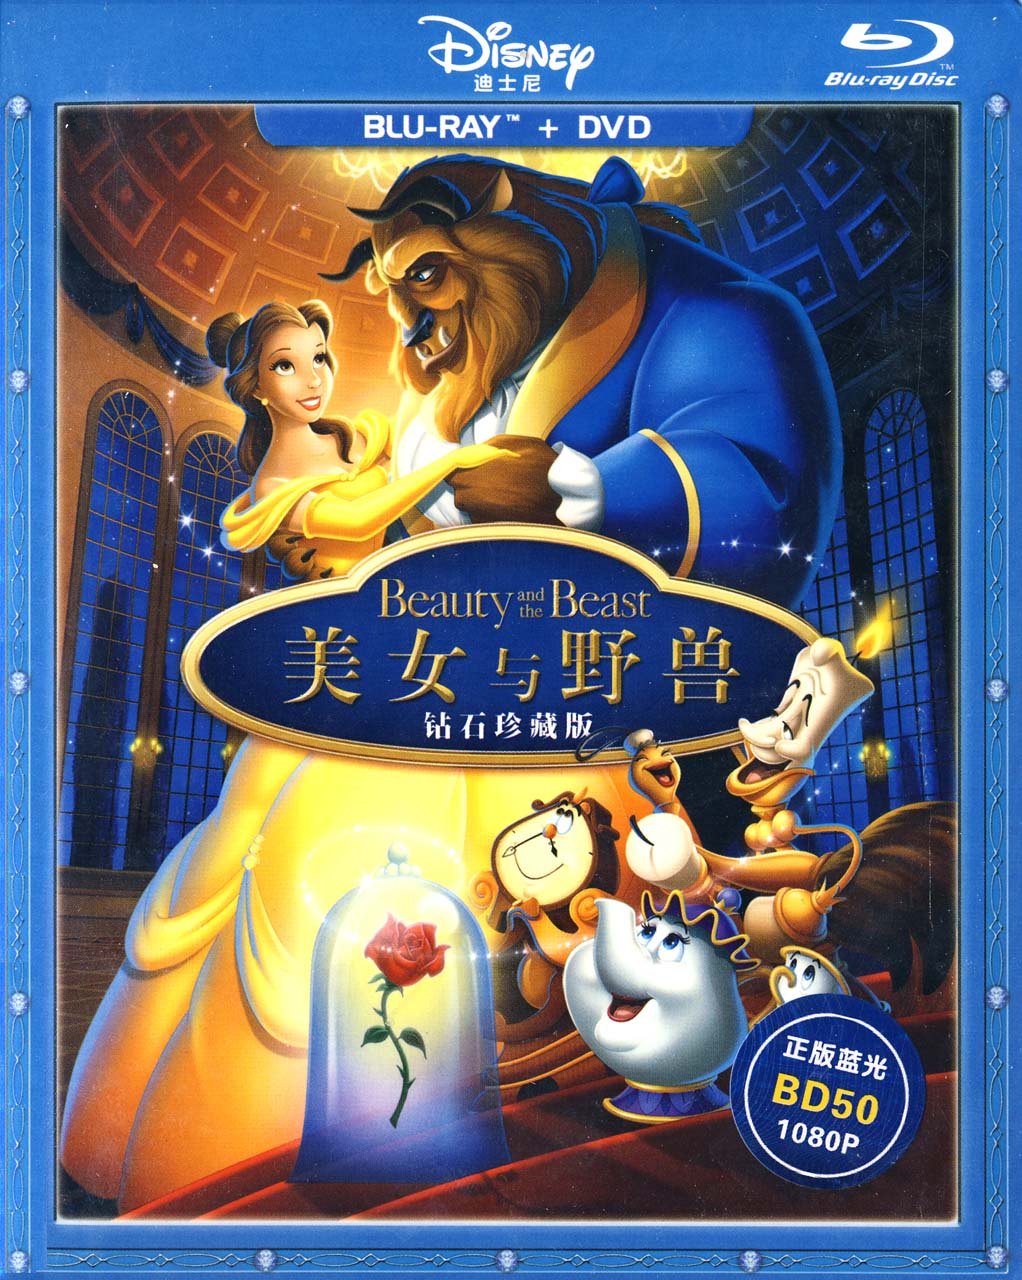 美女与野兽 钻石珍藏版 原生国粤语繁简中字 公映版+特别加长版二合一 含画中画 Beauty and the Beast 1991 CHN Blu-Ray+DVD AVC DTS-HD MA 7 1-tiandiyiti@HDSky[48.18 GB]